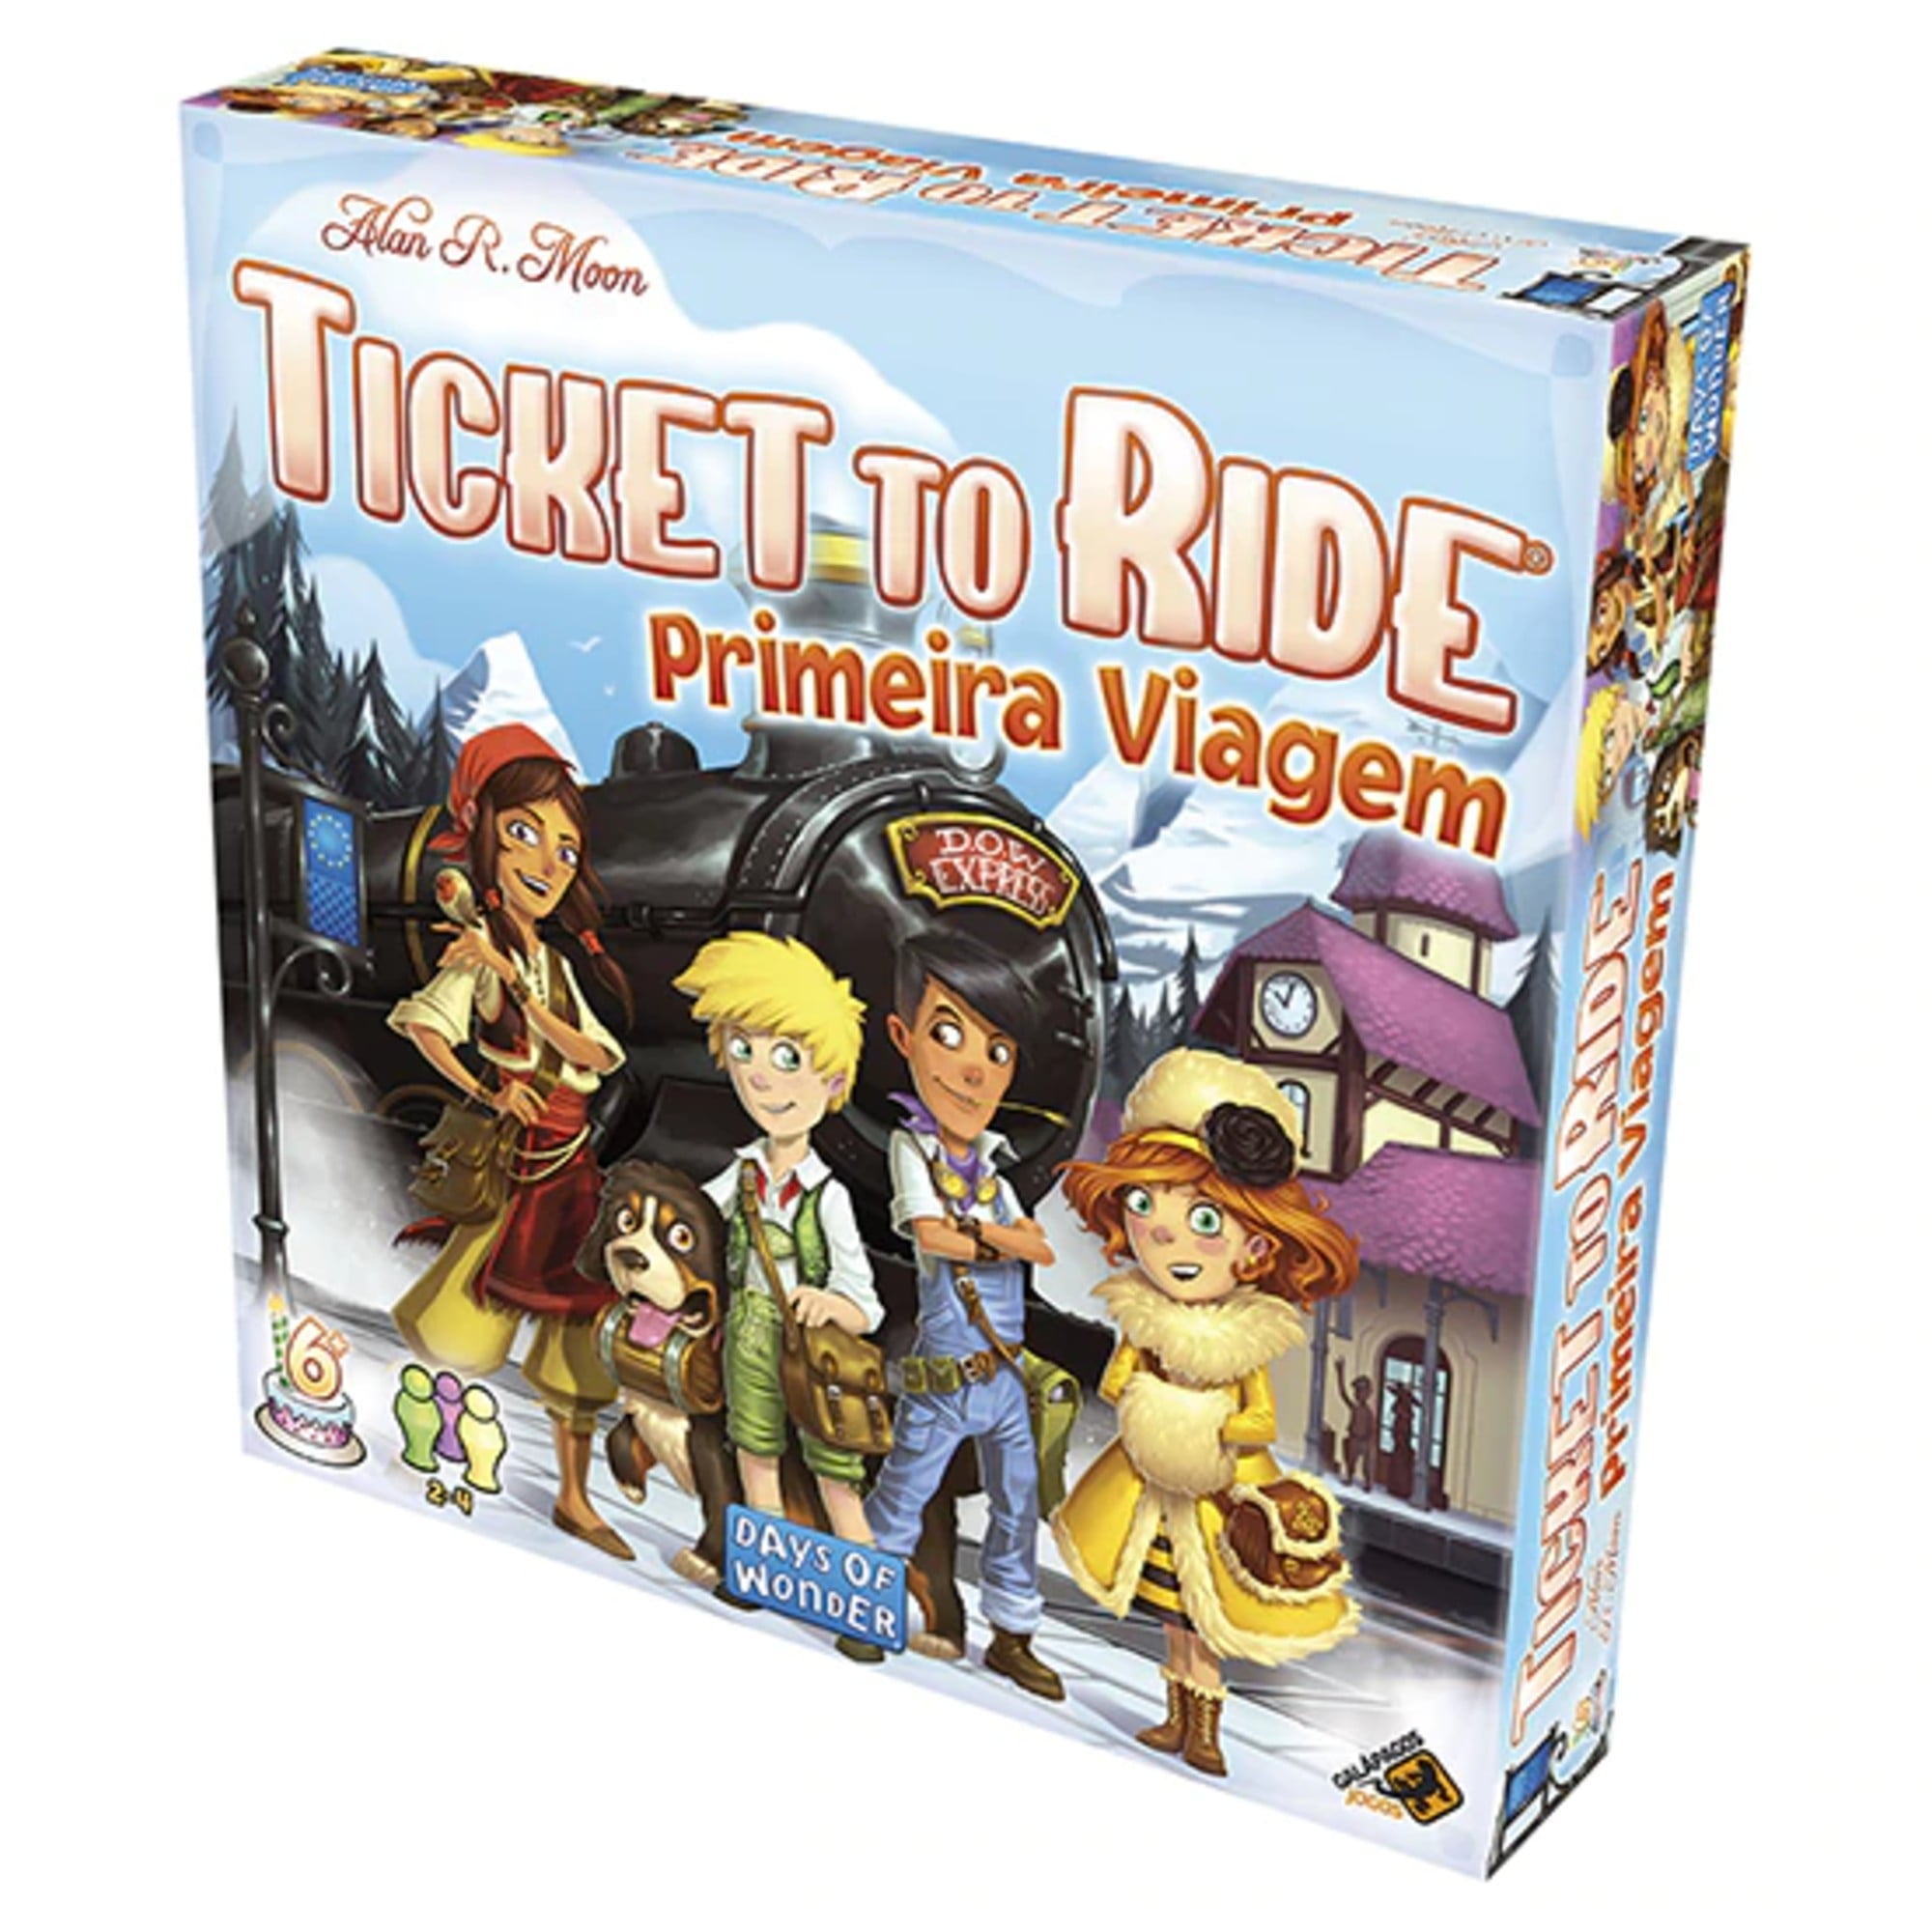 Ticket to Ride Primeira Viagem